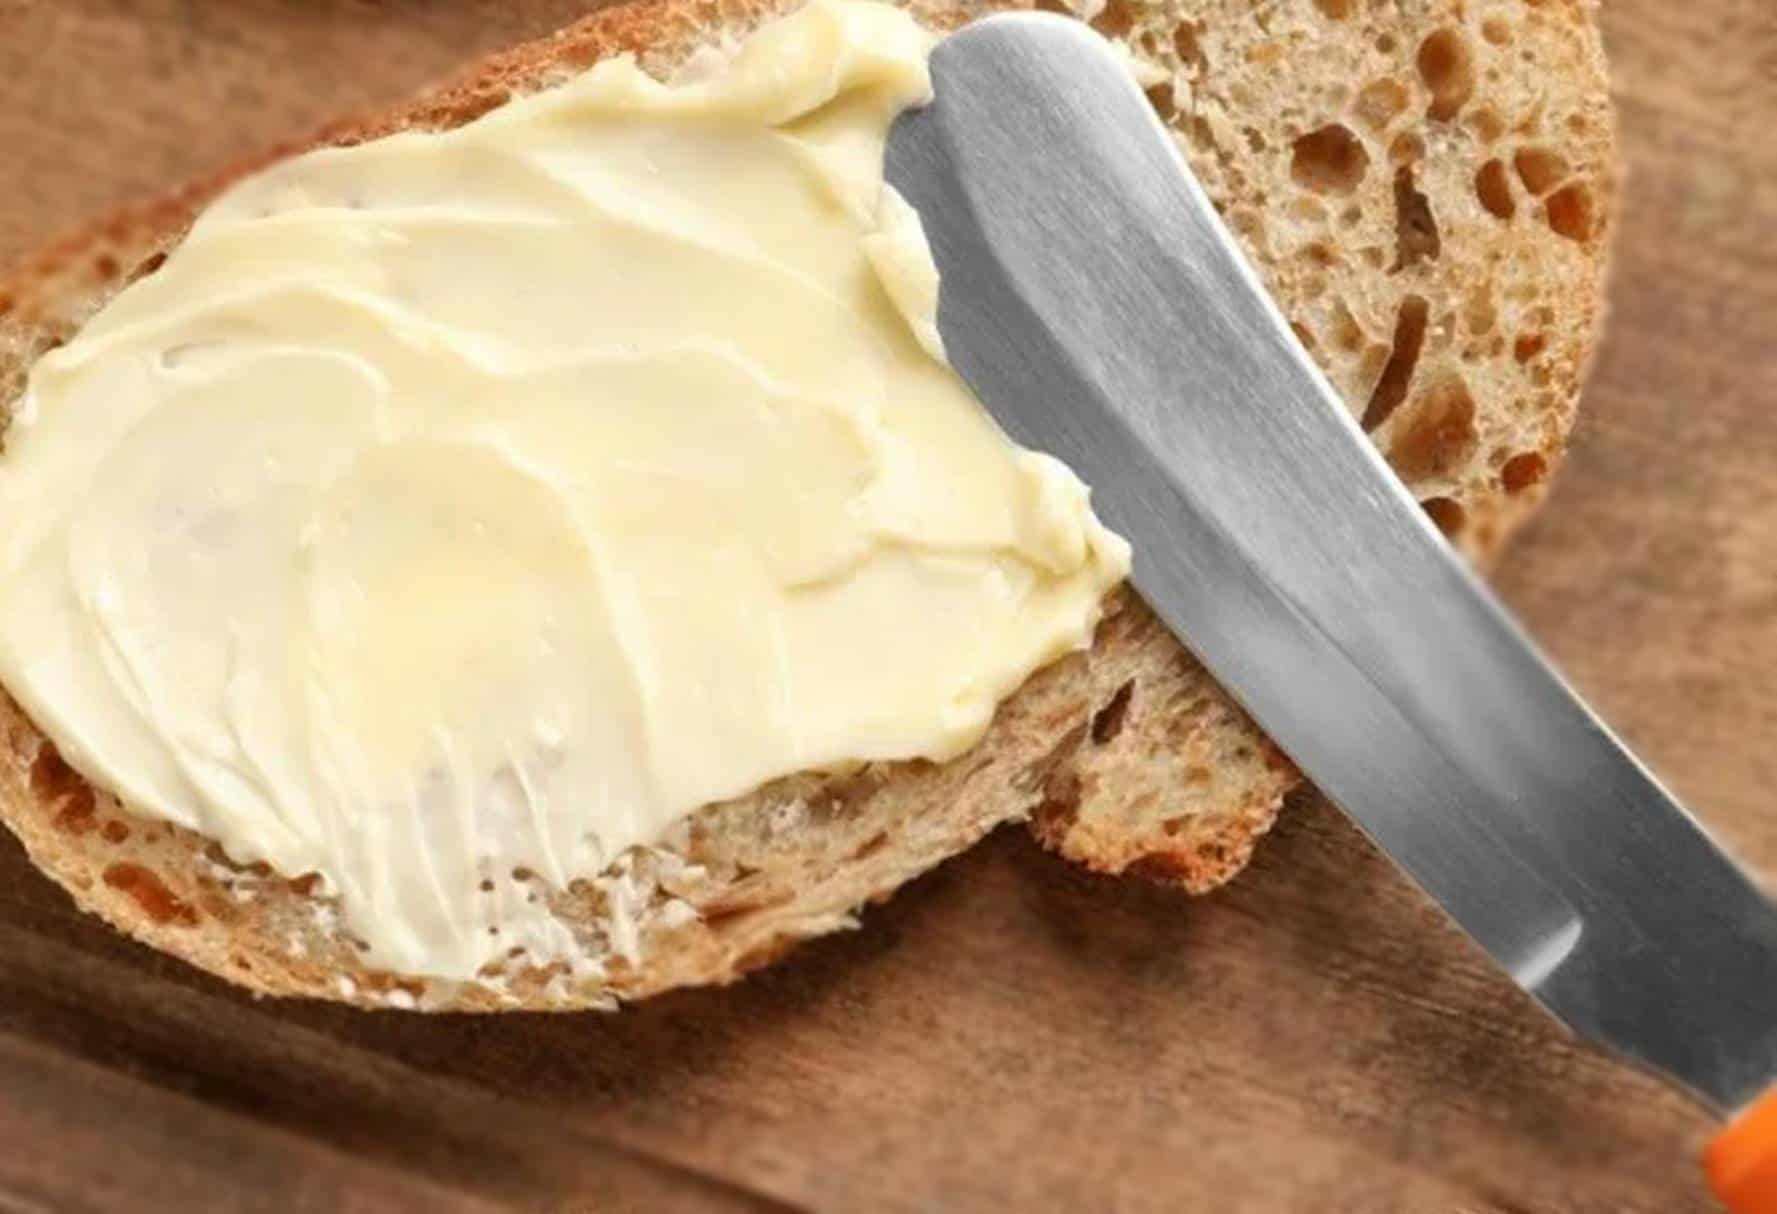 Café da manhã mortal: Veja o motivo pelo qual você deve parar de comer pão com manteiga com o estômago vazio